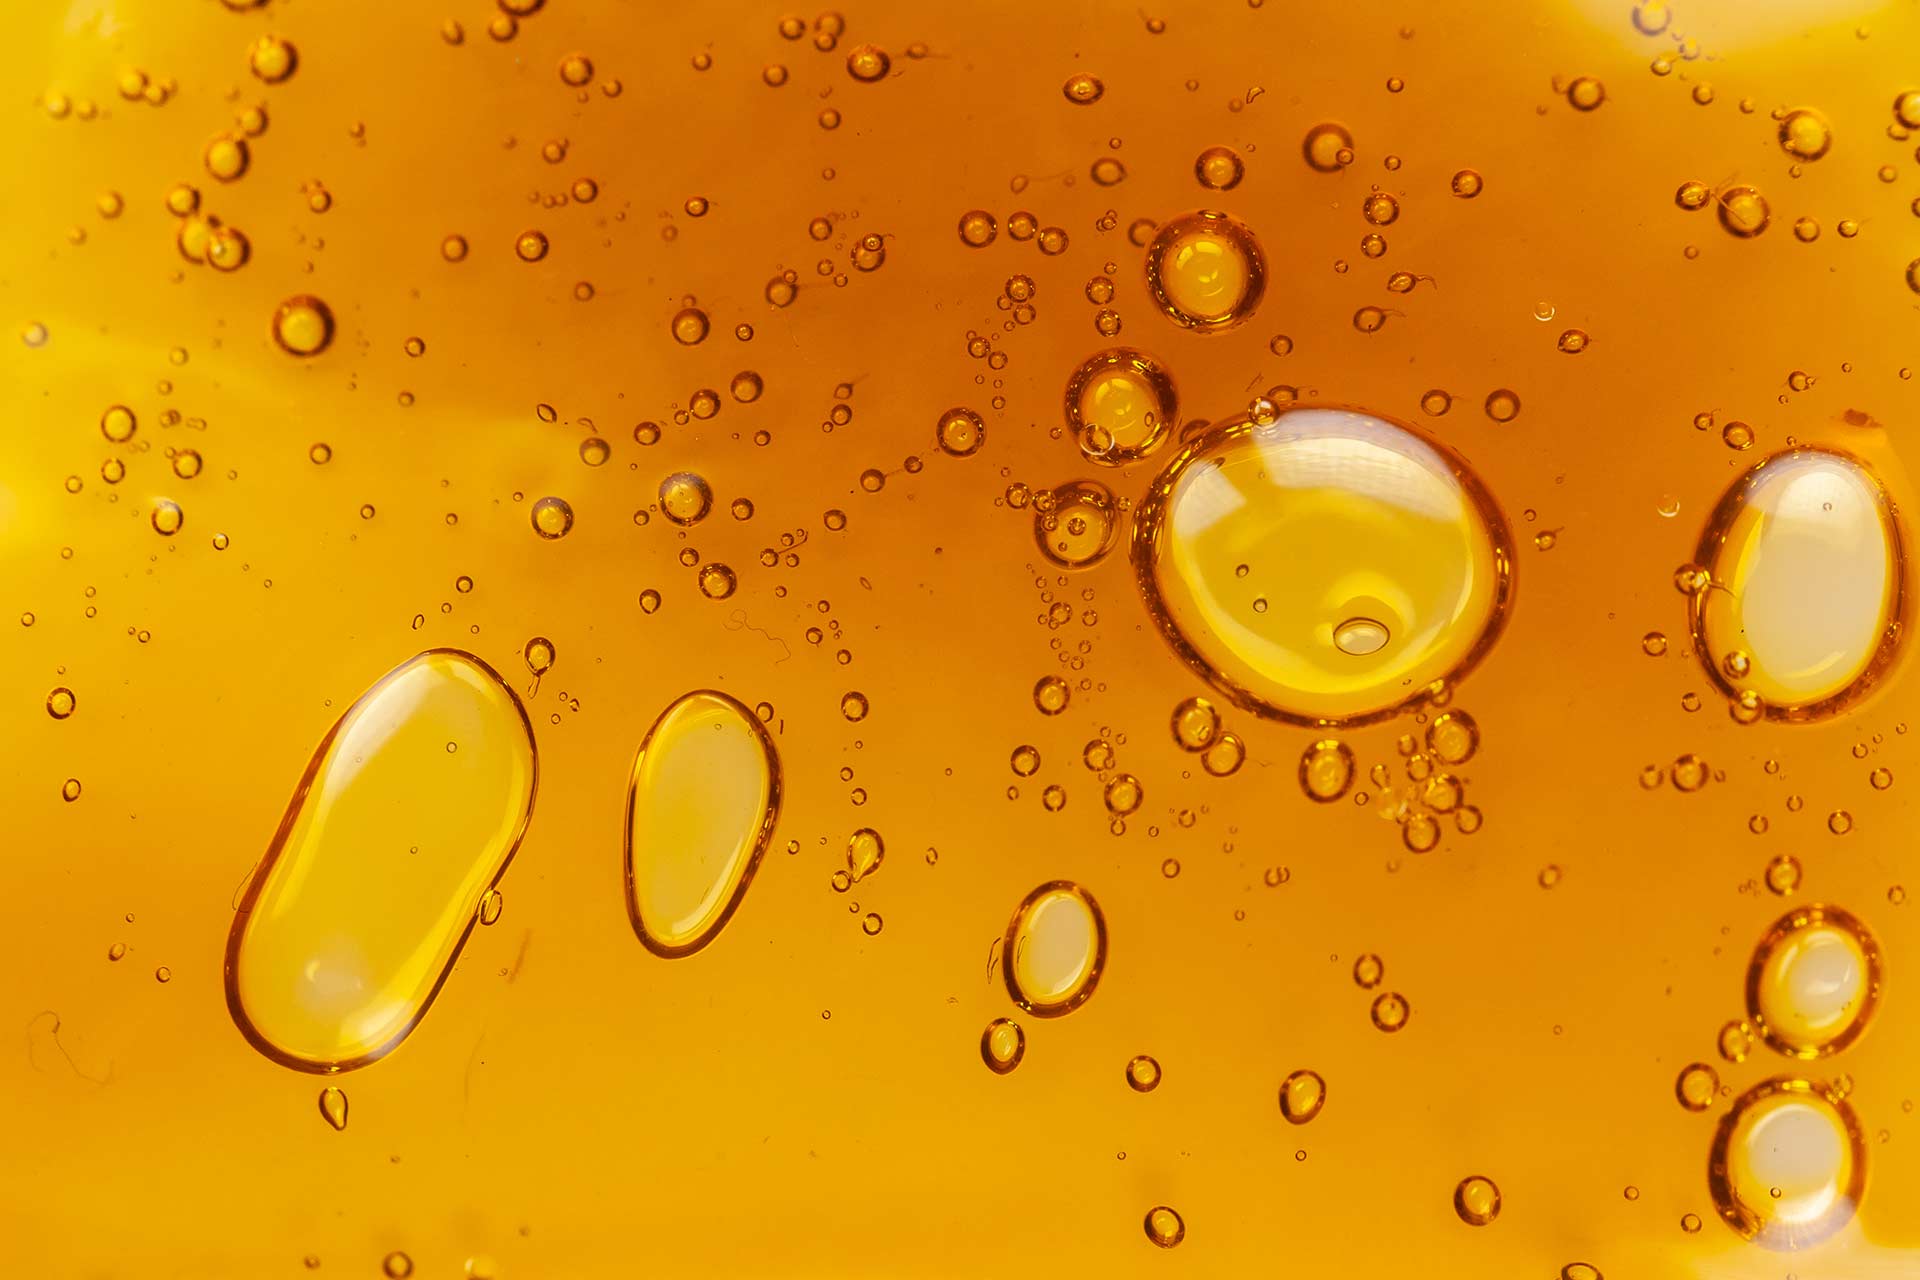 bubbles in amber colored distillate